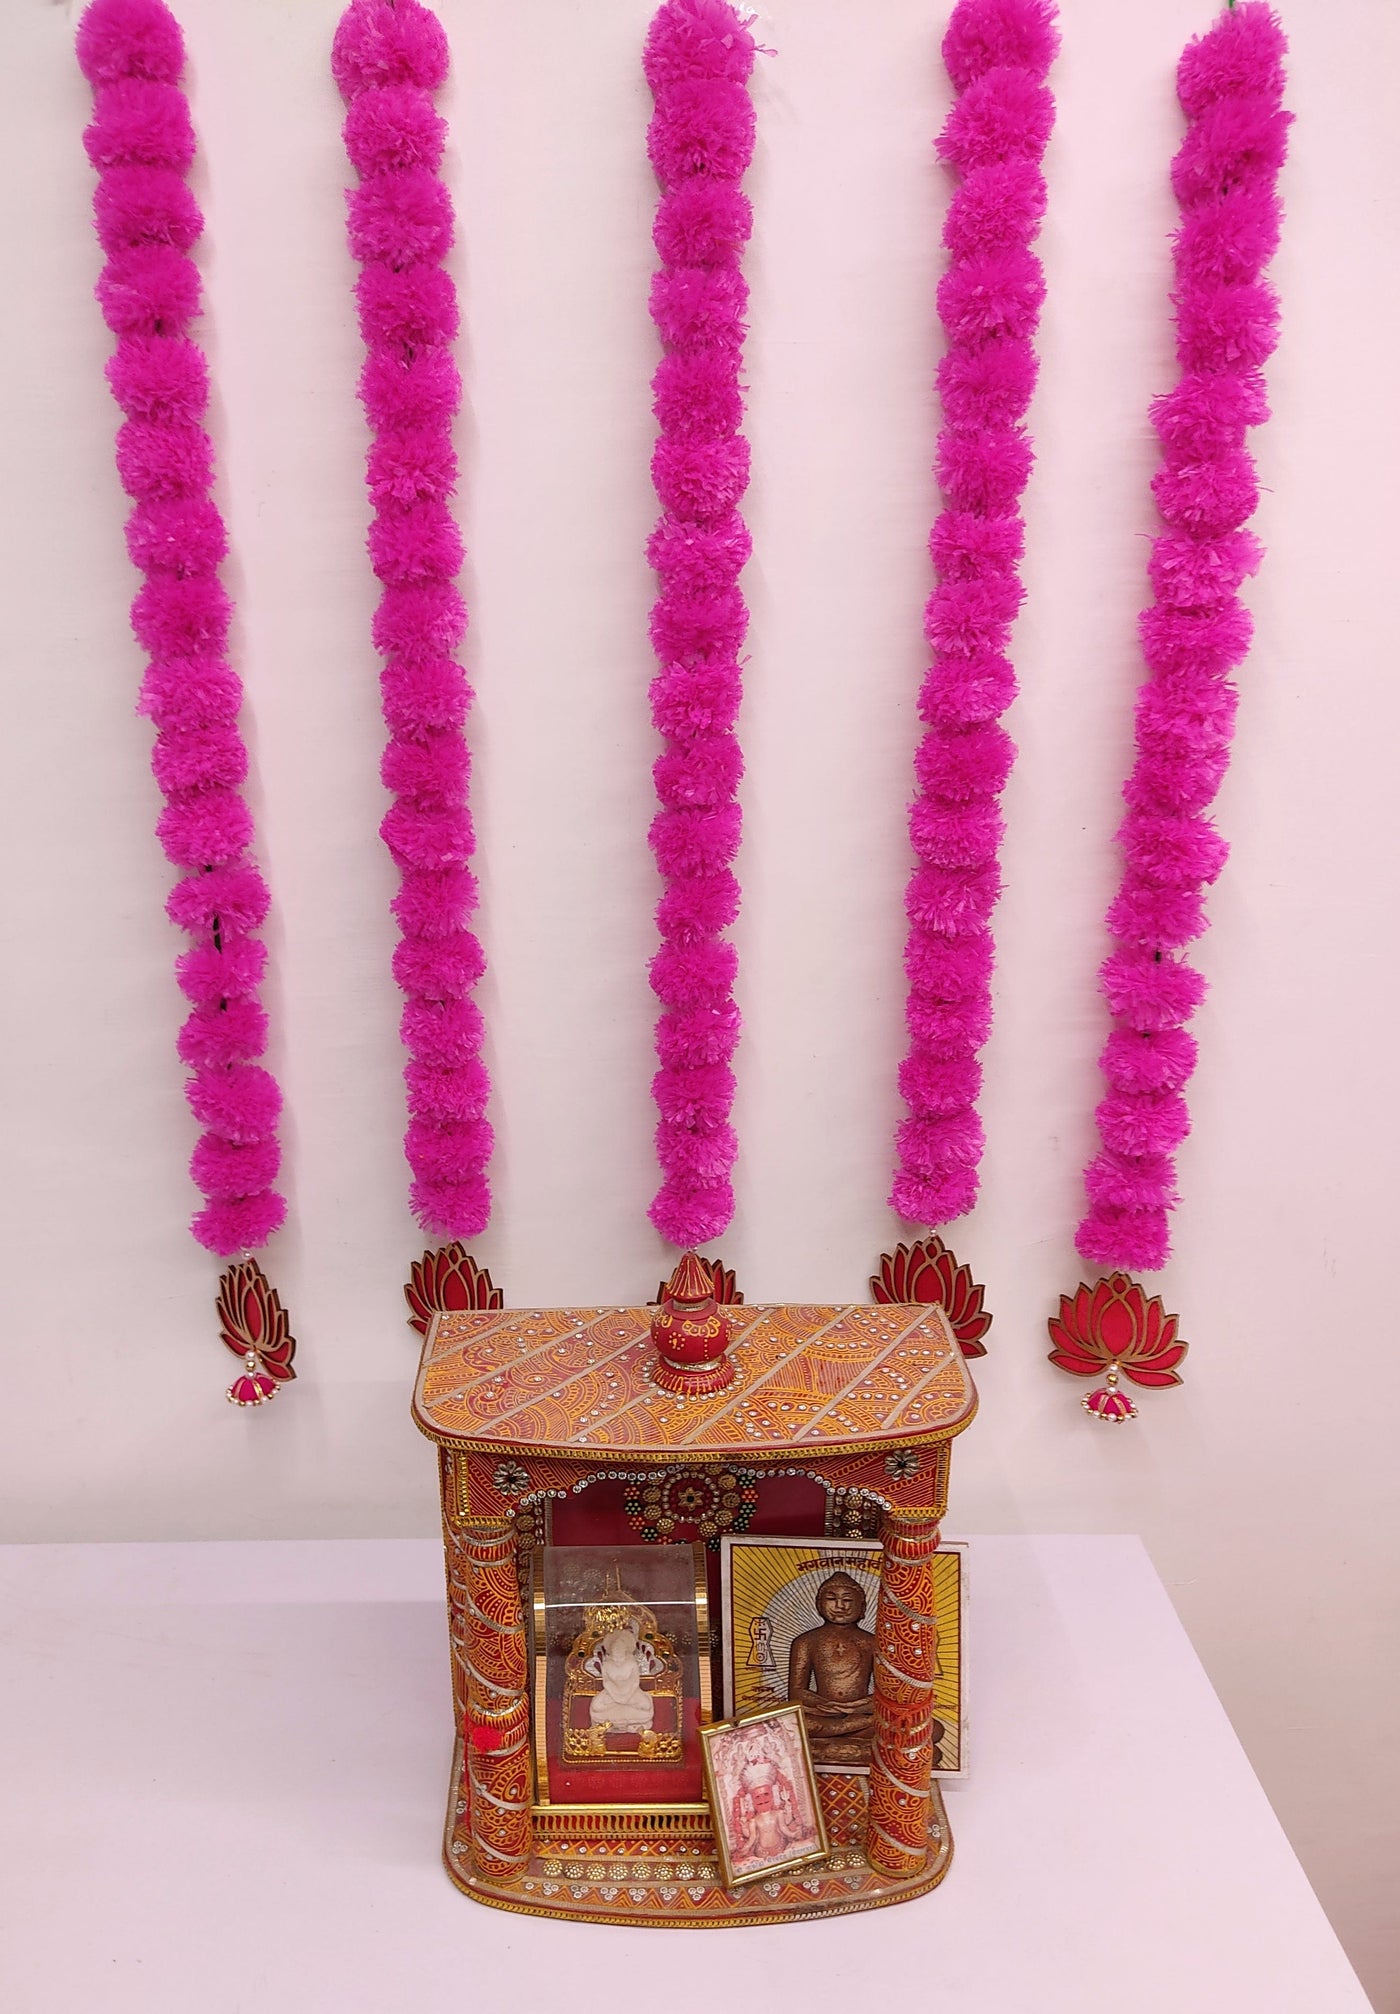 Lamansh lotus hanging LAMANSH 4 Feet Marigold Lotue Hangings for Diwali , Navratri & Ganesh Chaturthi Decor